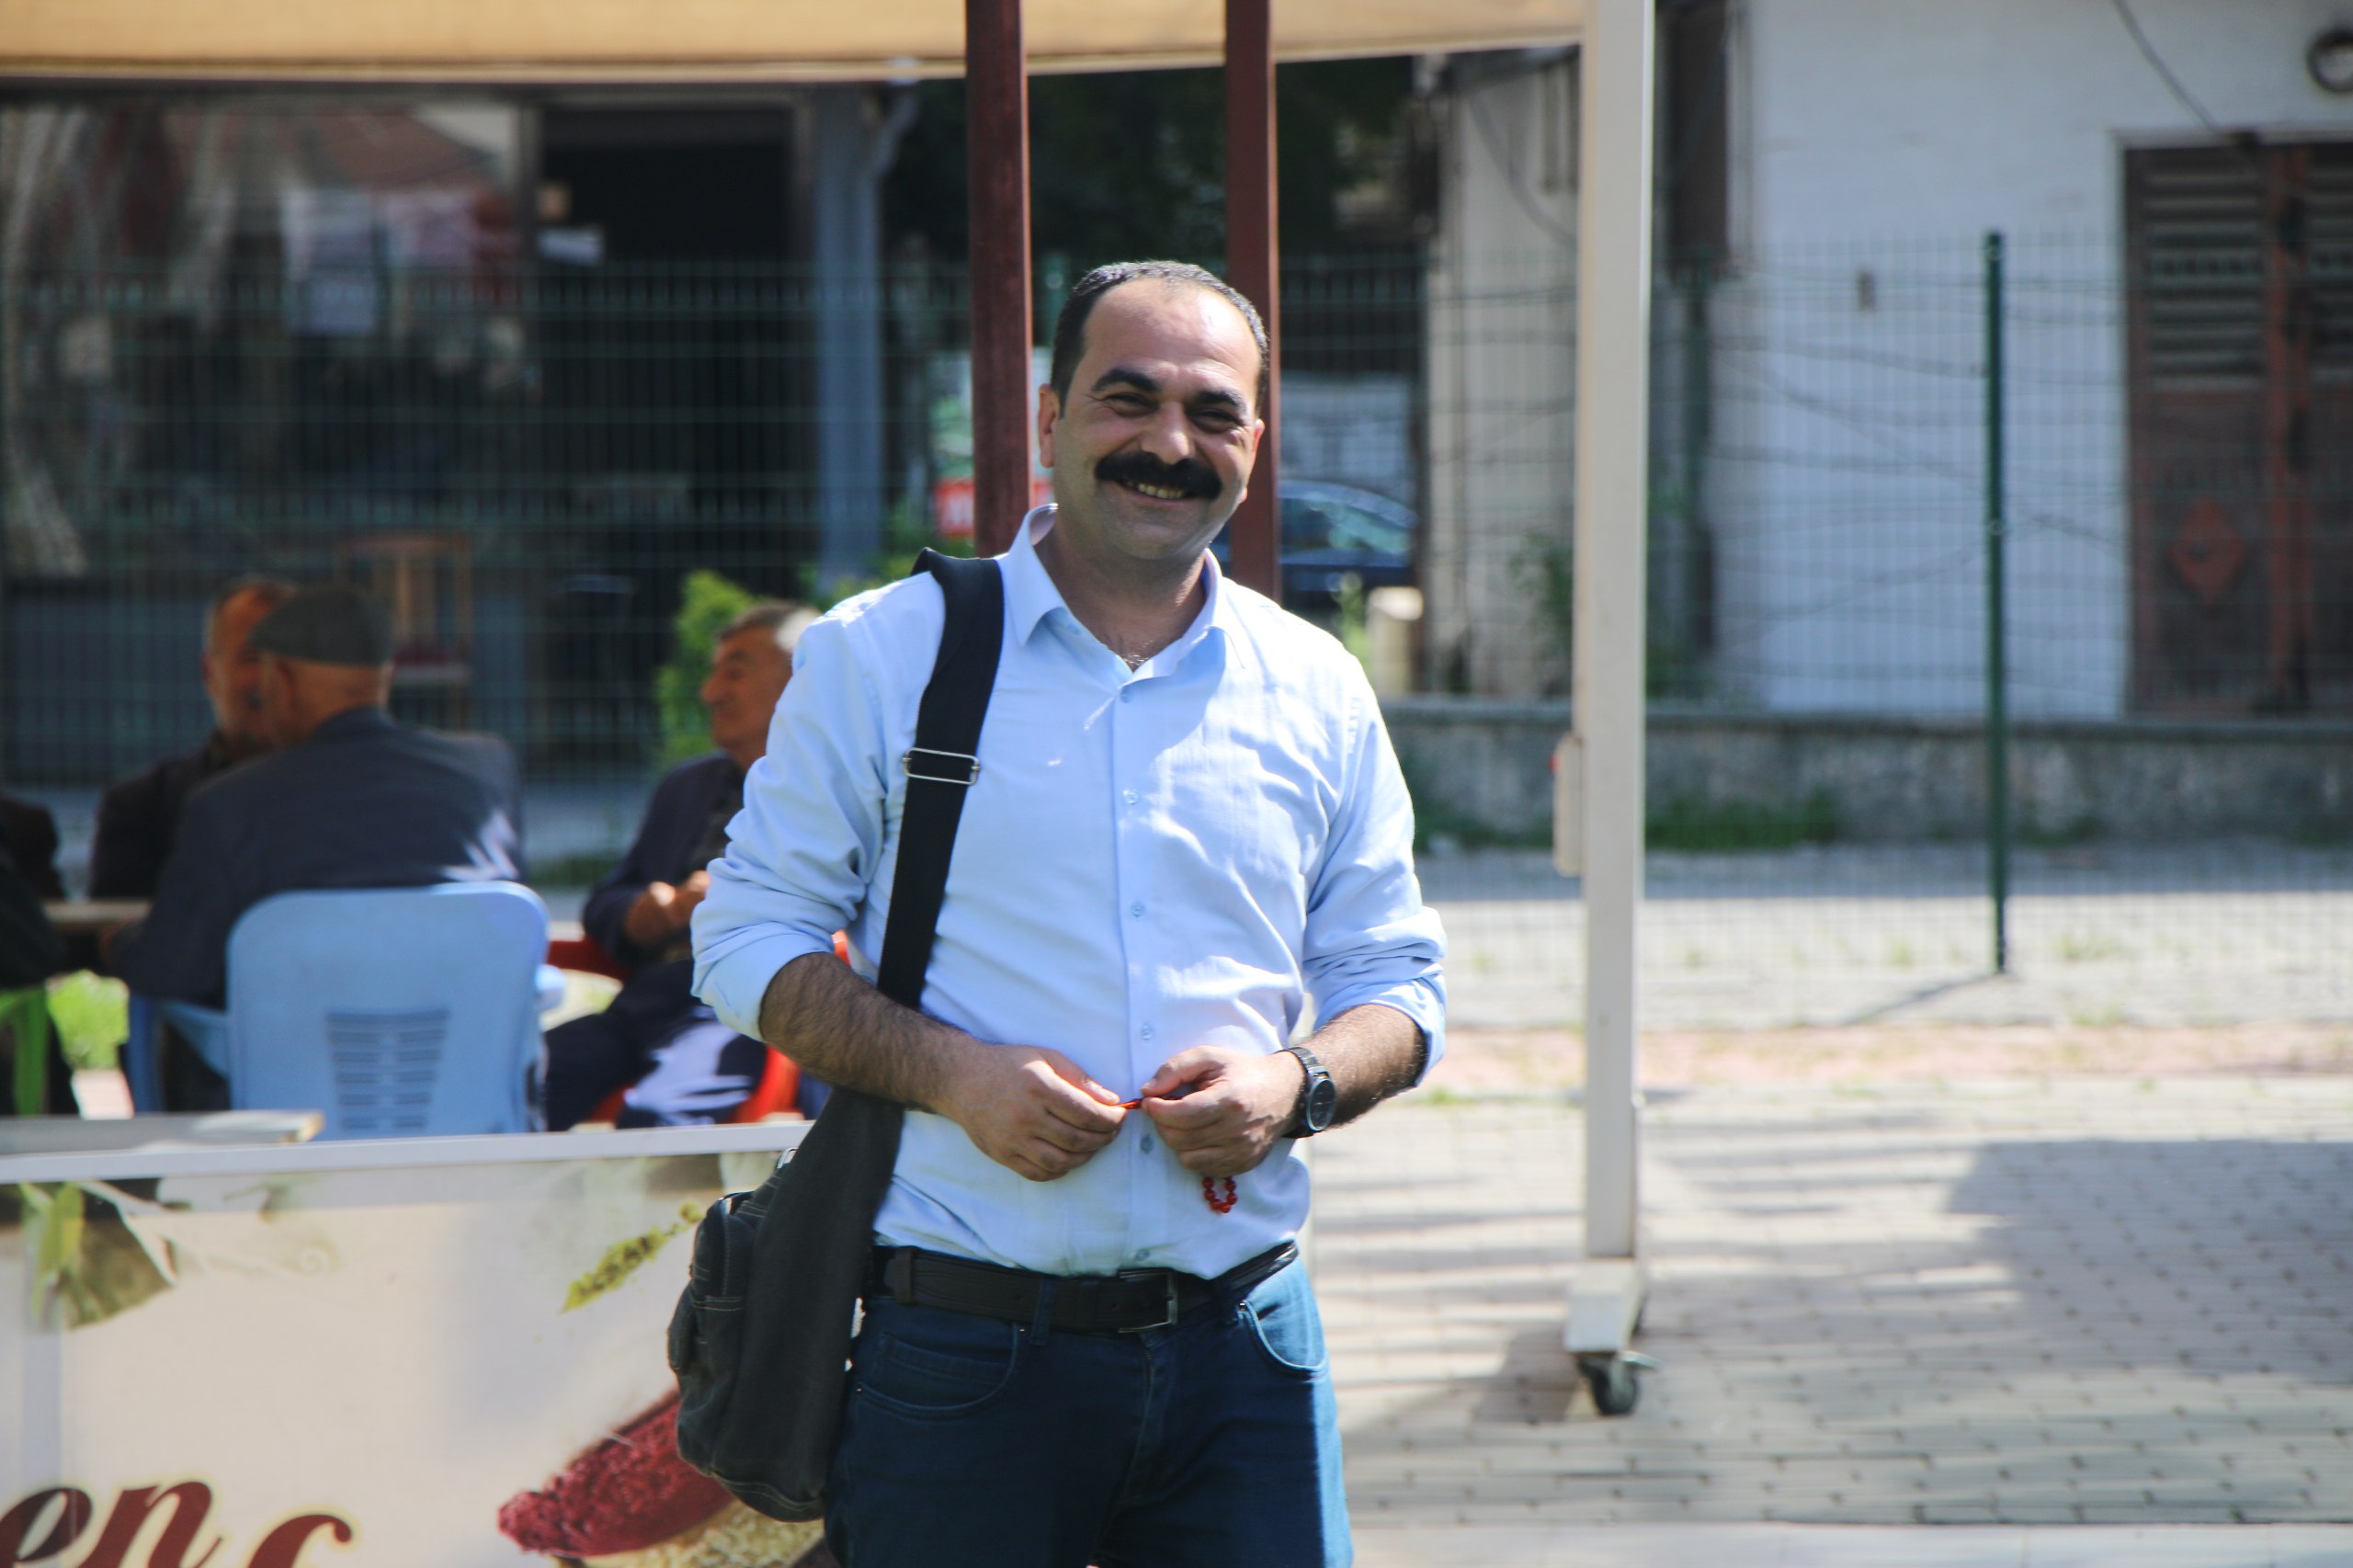 Gazeteciler İdris Yayla ve Ferhat Çelik’e 1 yıl 3 ay hapis cezası